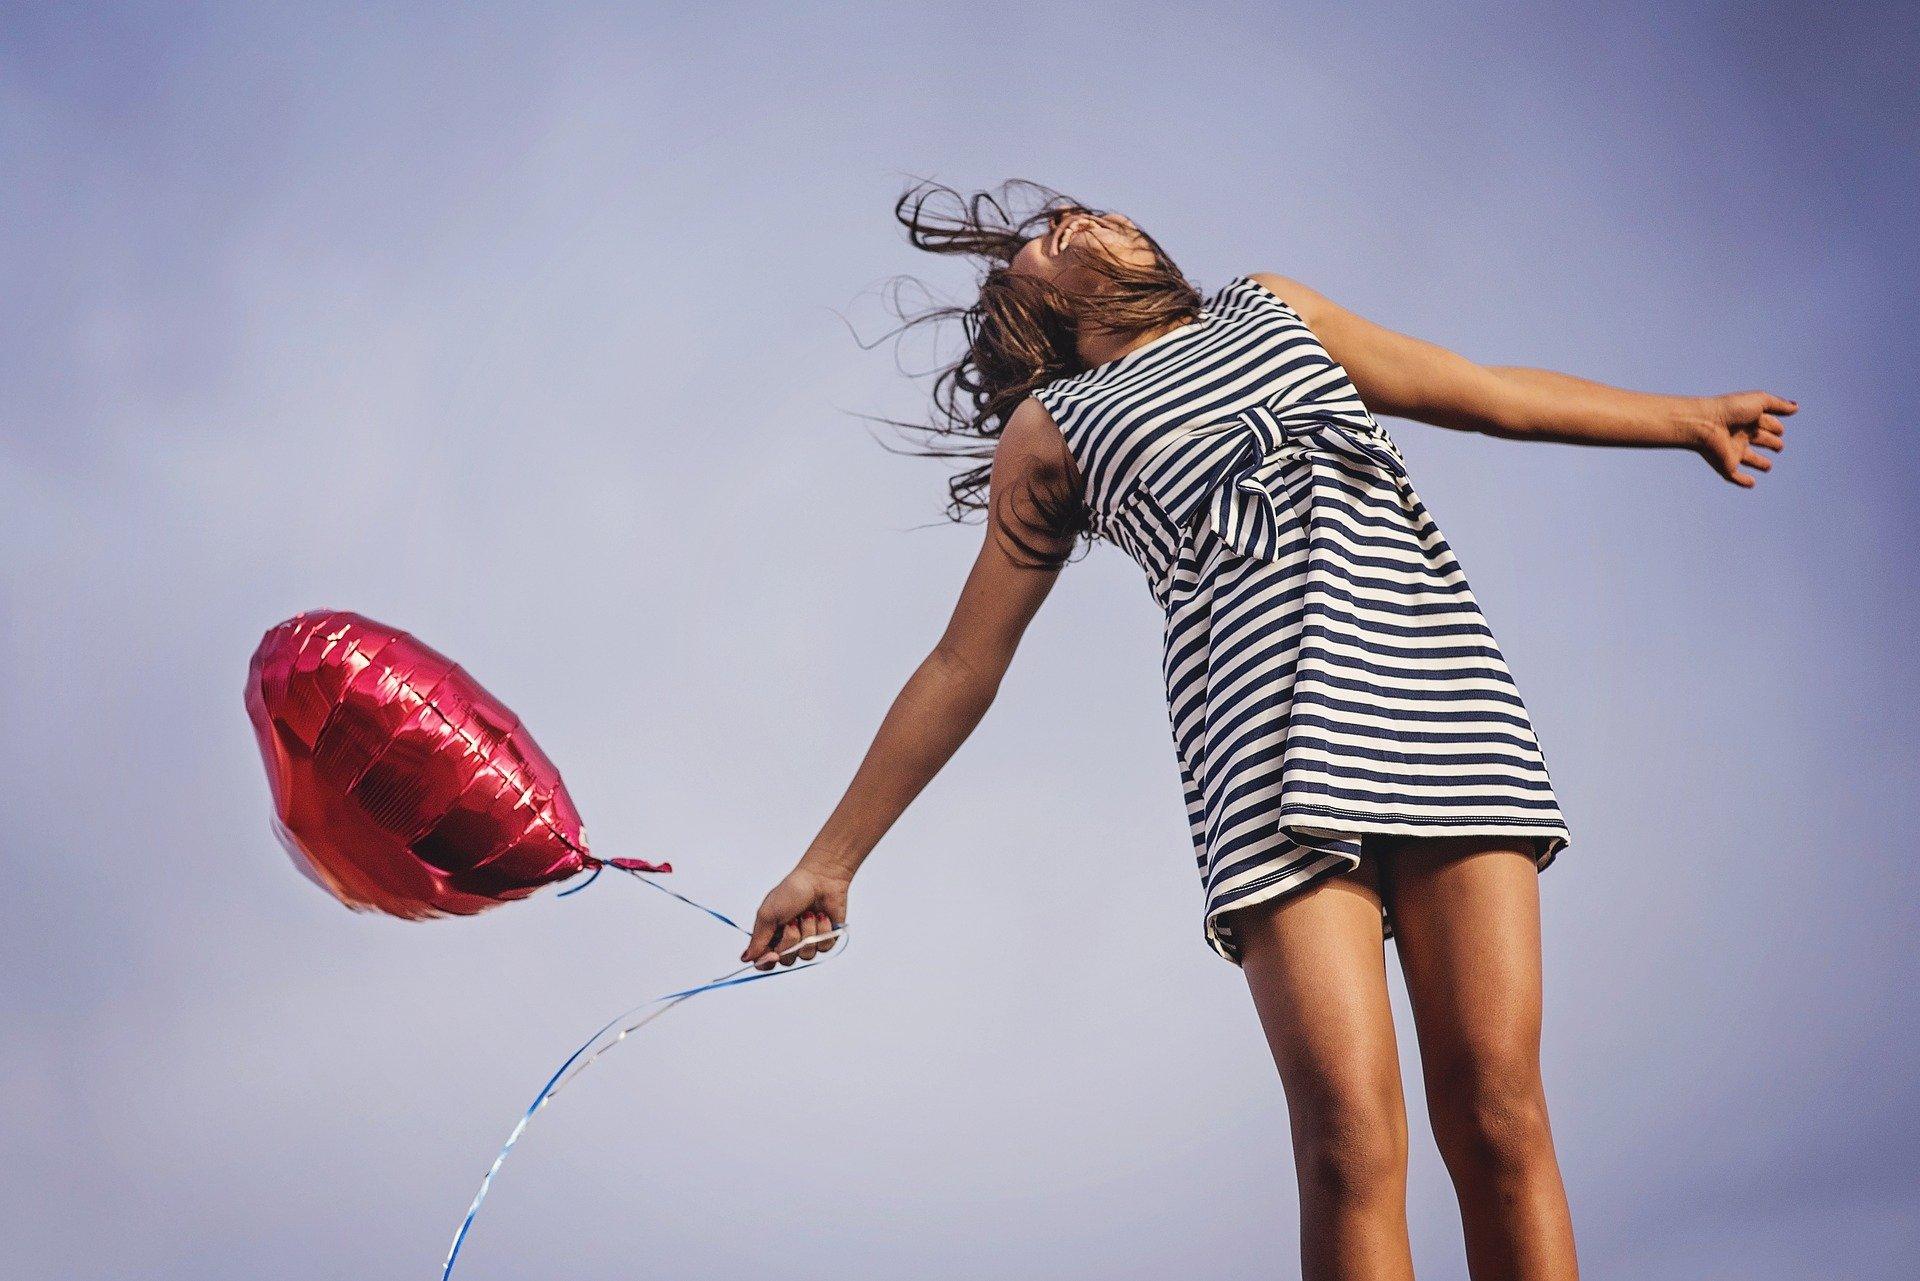 Imagem mostra mulher feliz com balão vermelho nas mãos - frases de felicidade